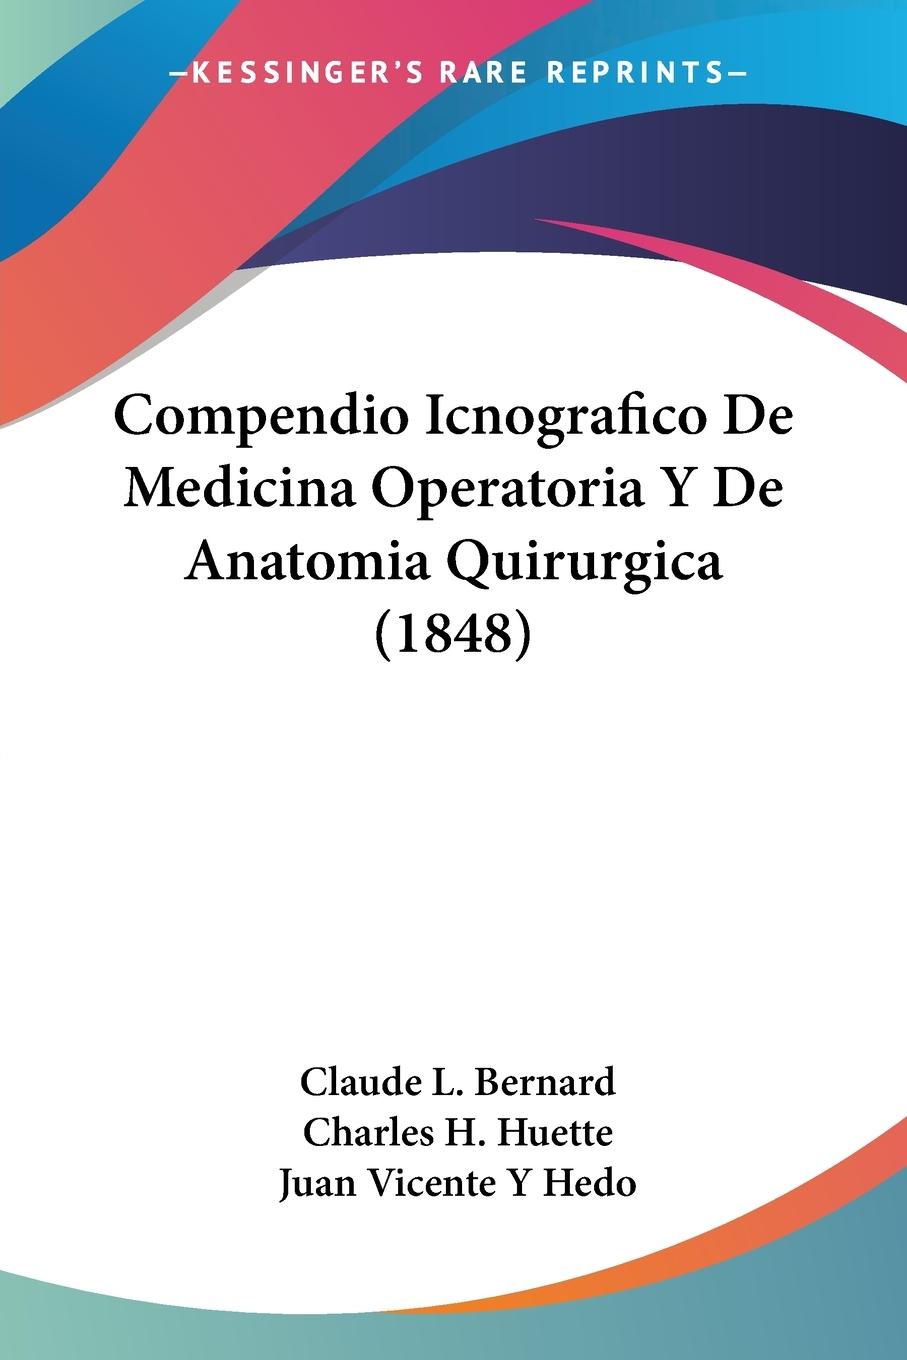 Compendio Icnografico De Medicina Operatoria Y De Anatomia Quirurgica (1848) - Bernard, Claude L. Huette, Charles H. Hedo, Juan Vicente Y